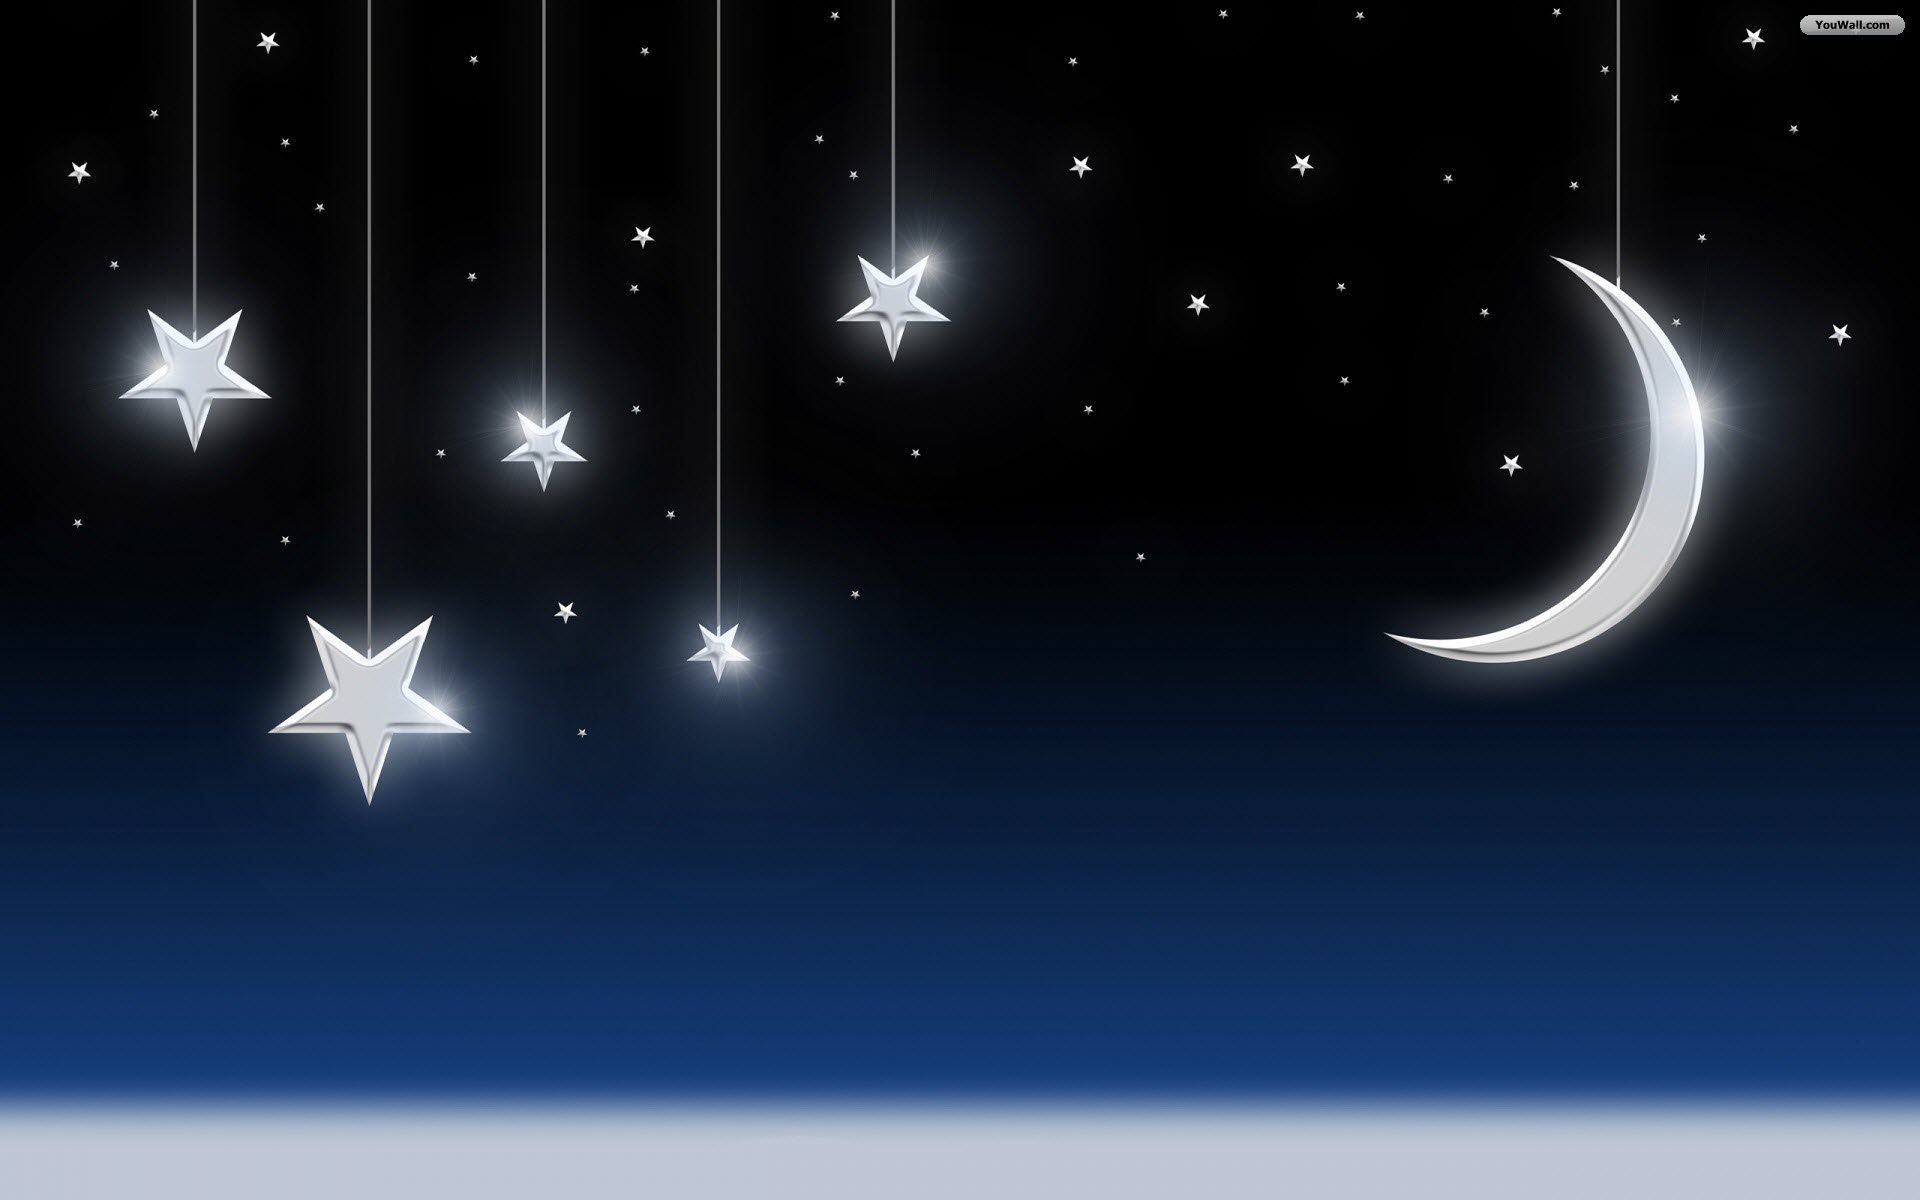 Moon and Stars Desktop Wallpaper. Papel de parede